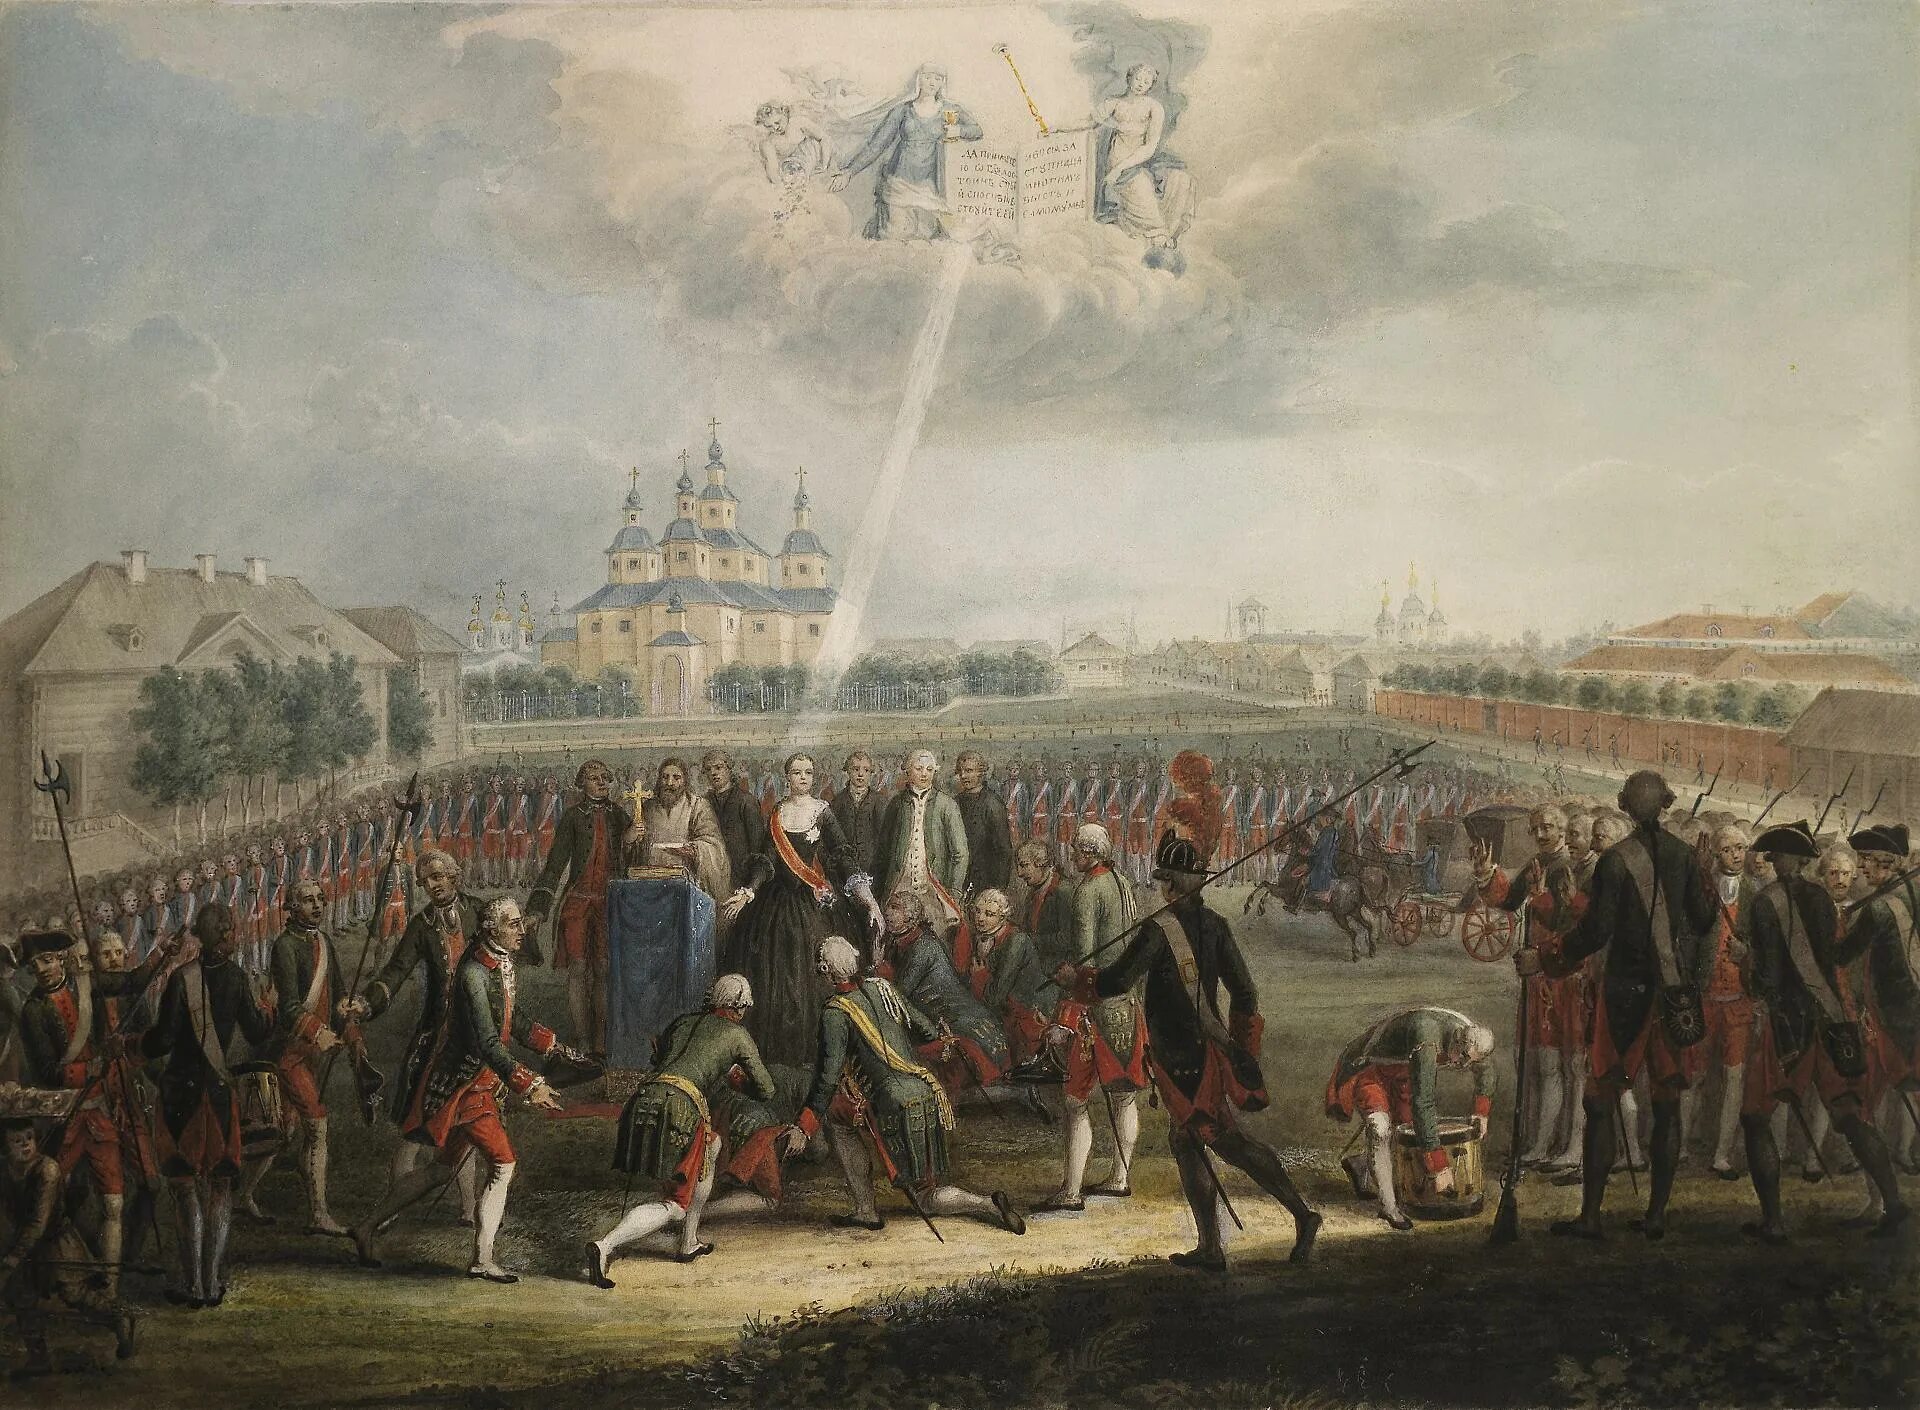 Захват престола. Дворцовый переворот 1762 Измайловский полк. Переворот 28 июня 1762 года Екатерины 2. Присяга Измайловского полка Екатерине II. Дворцовый переворот 28 июня 1762 года.